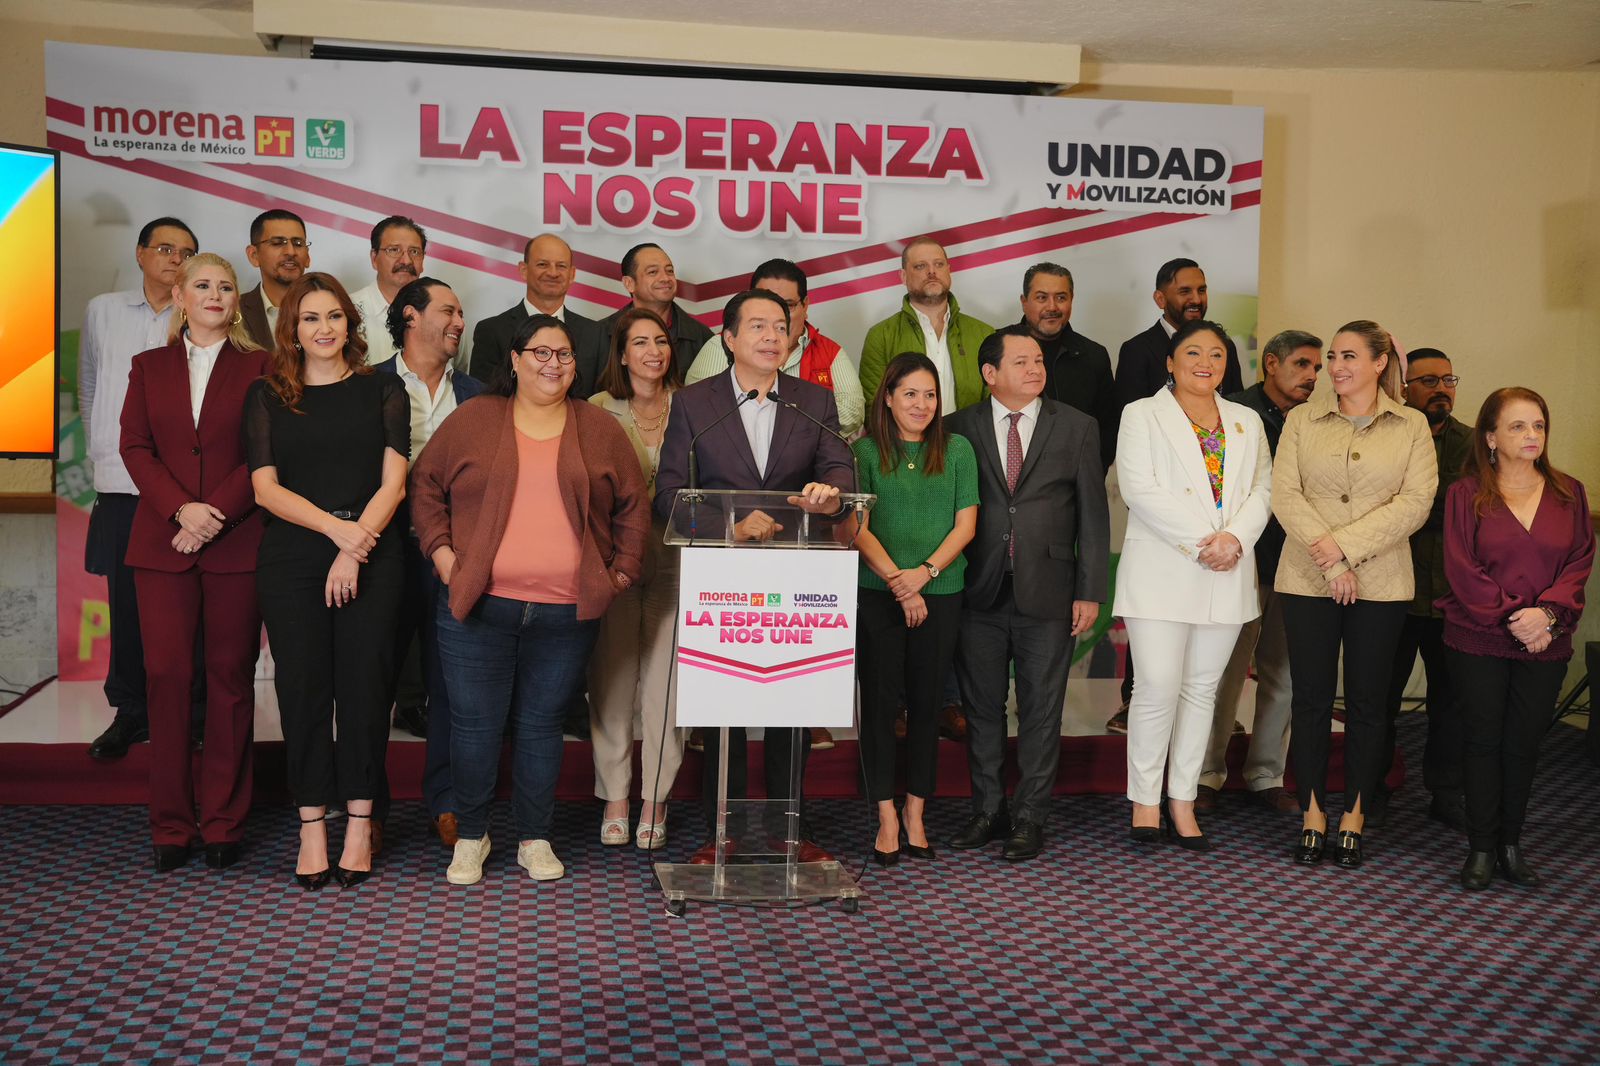 Huacho Díaz y Verónica Farjat mejor posicionados en encuestas en Yucatán, Mario Delgado